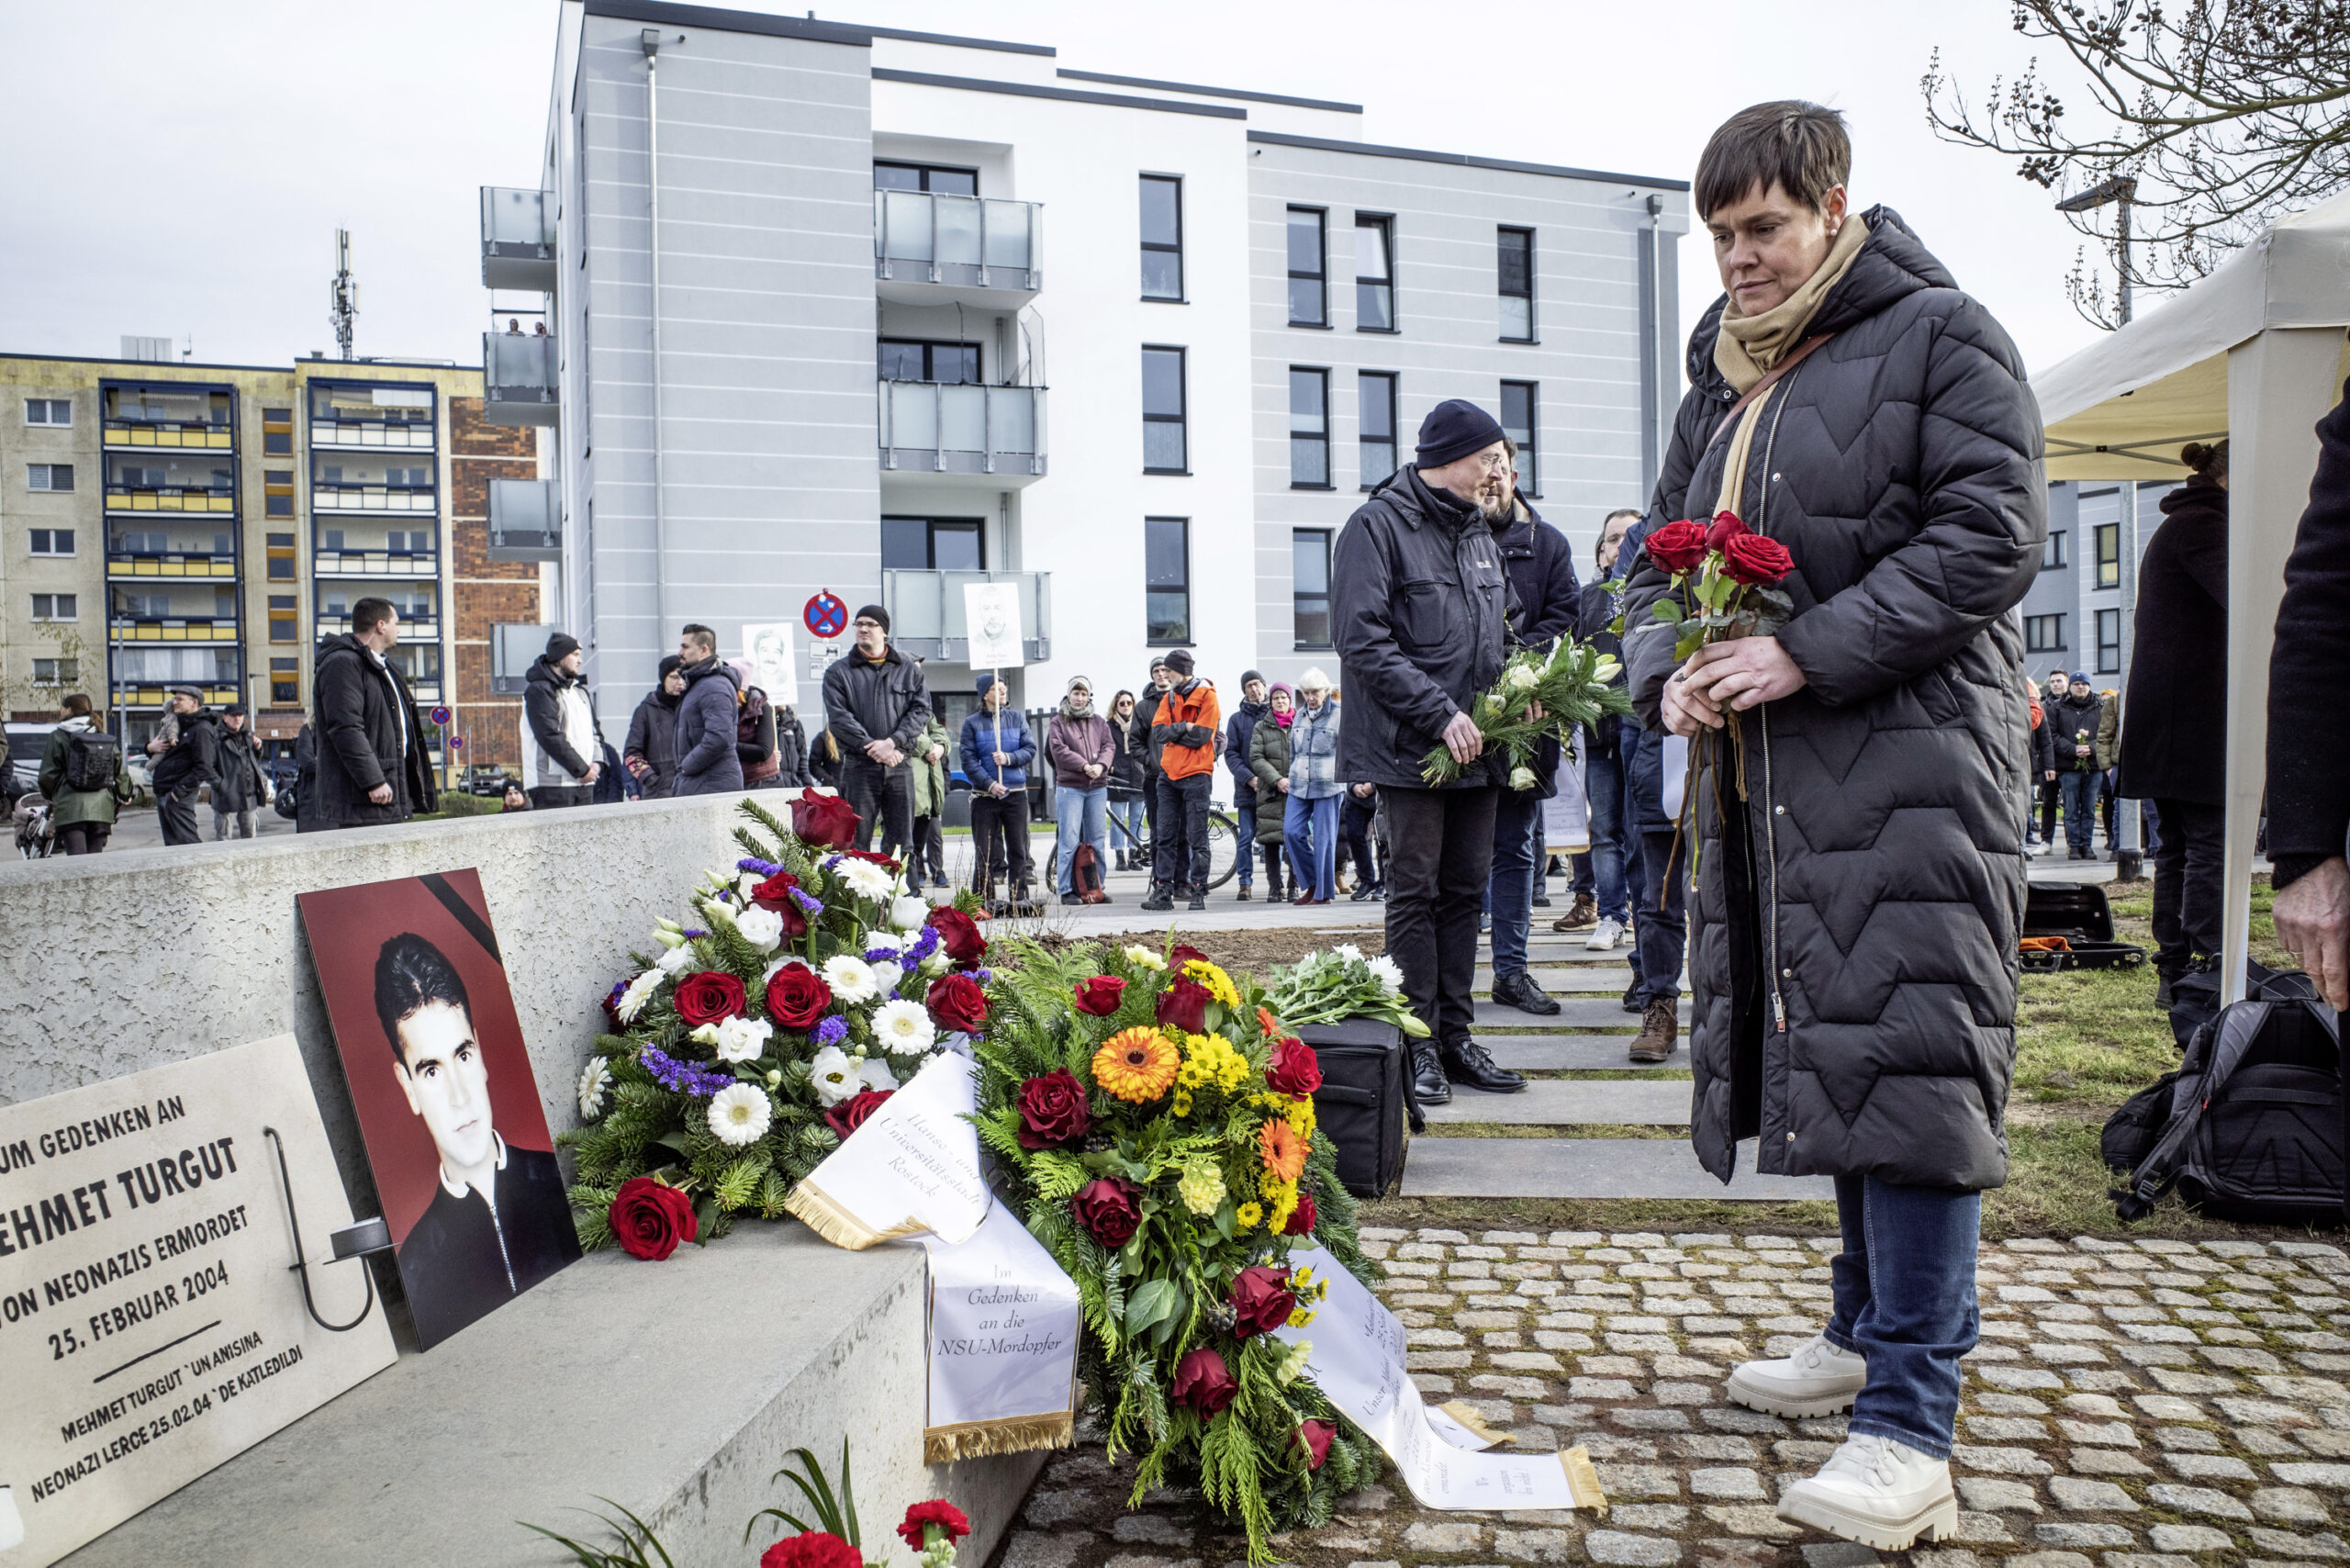 Rostocks Oberbürgermeisterin Eva-Maria Kröger (Linke) legt auf der Gedenkveranstaltung Blumen nieder.